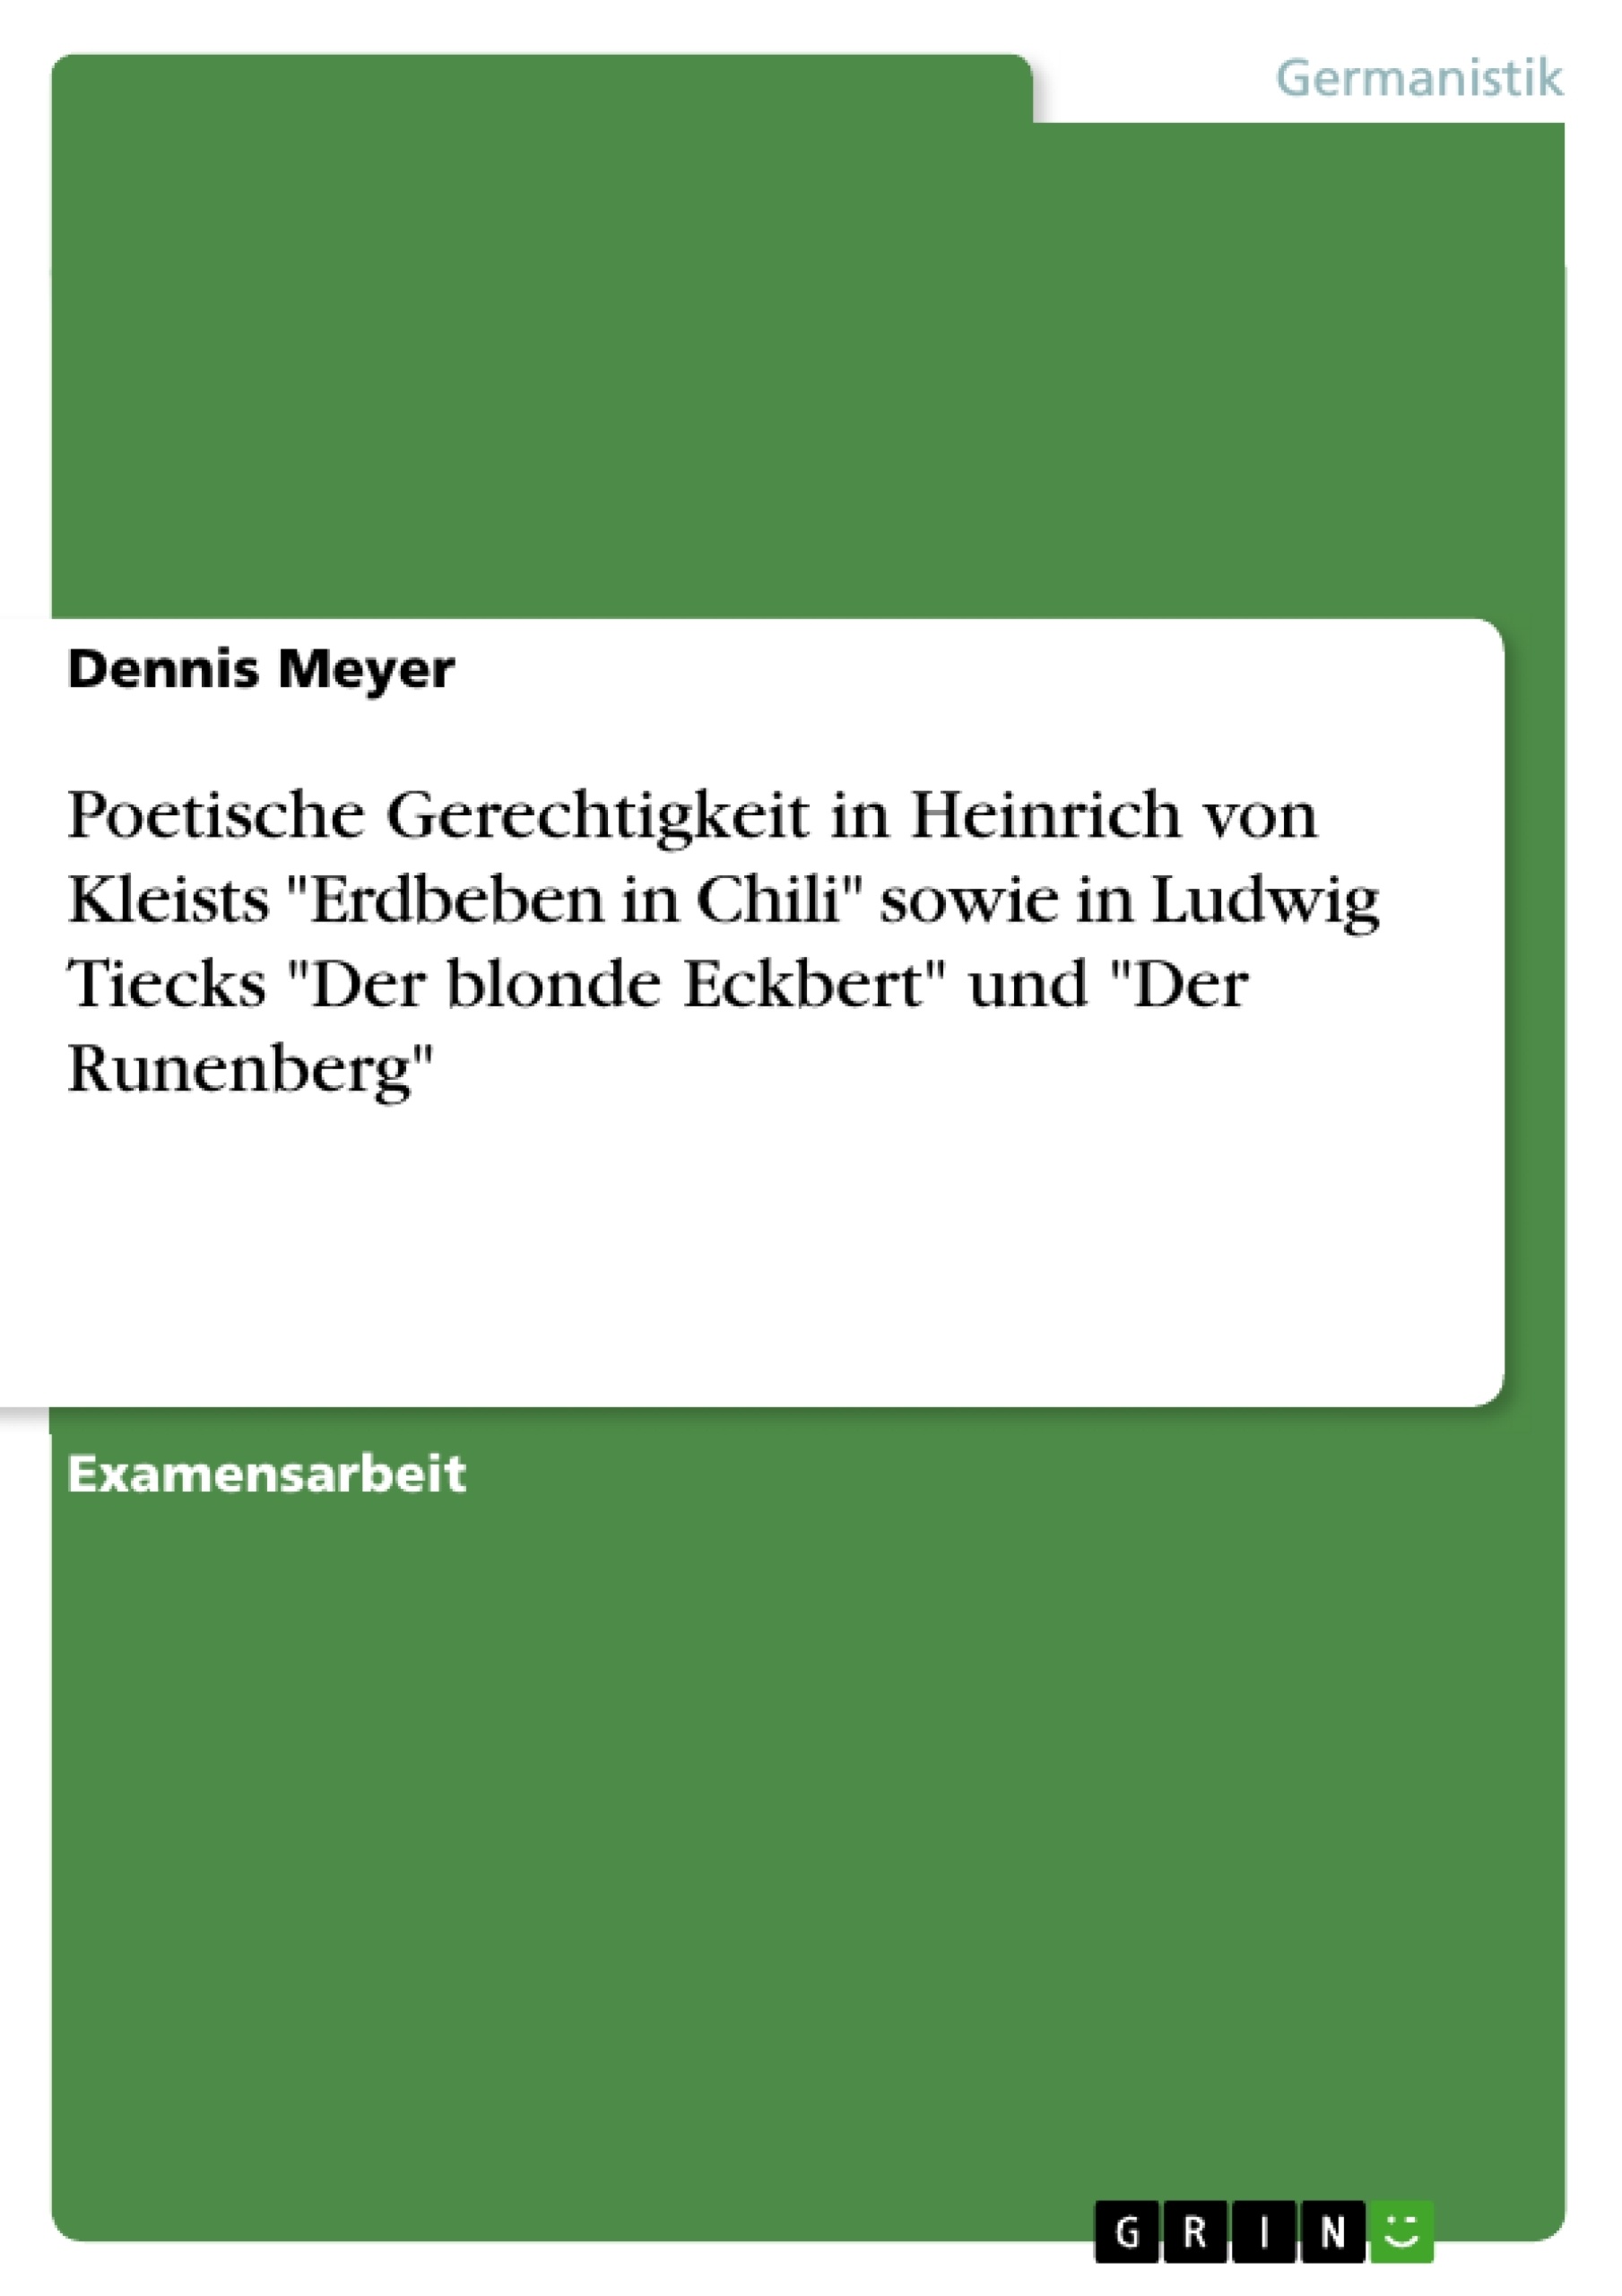 Titre: Poetische Gerechtigkeit in Heinrich von Kleists "Erdbeben in Chili" sowie in Ludwig Tiecks "Der blonde Eckbert" und "Der Runenberg"